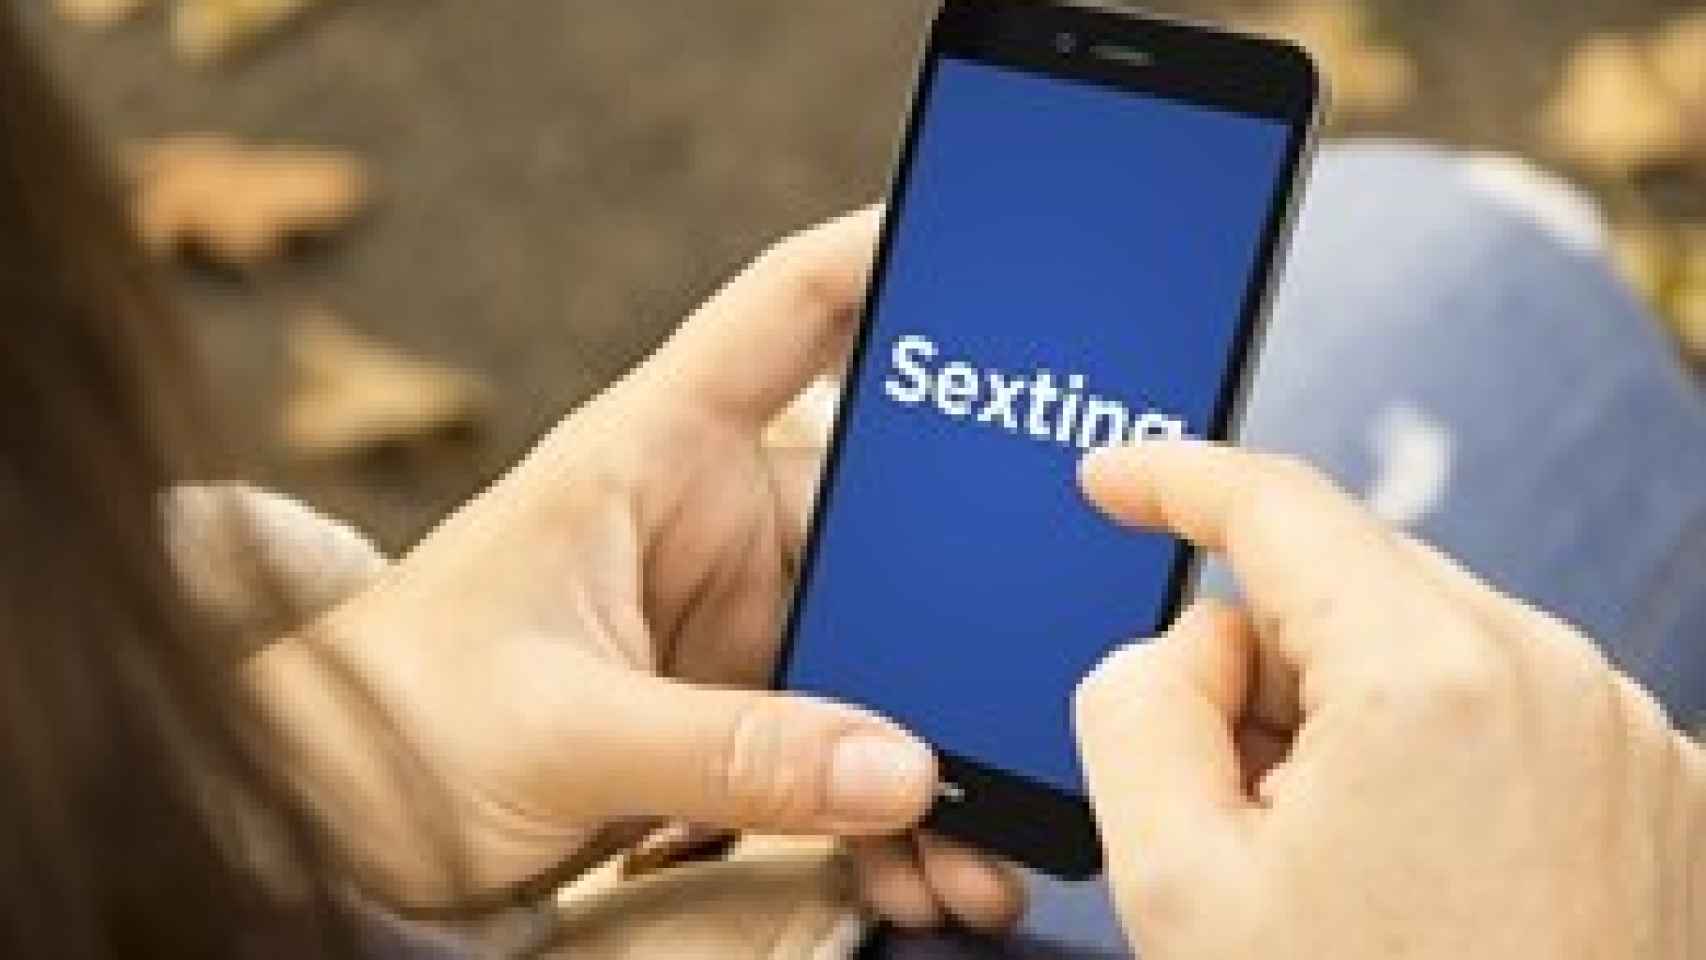 La policía localiza un grupo en el que se realizaba 'sexting' con menores